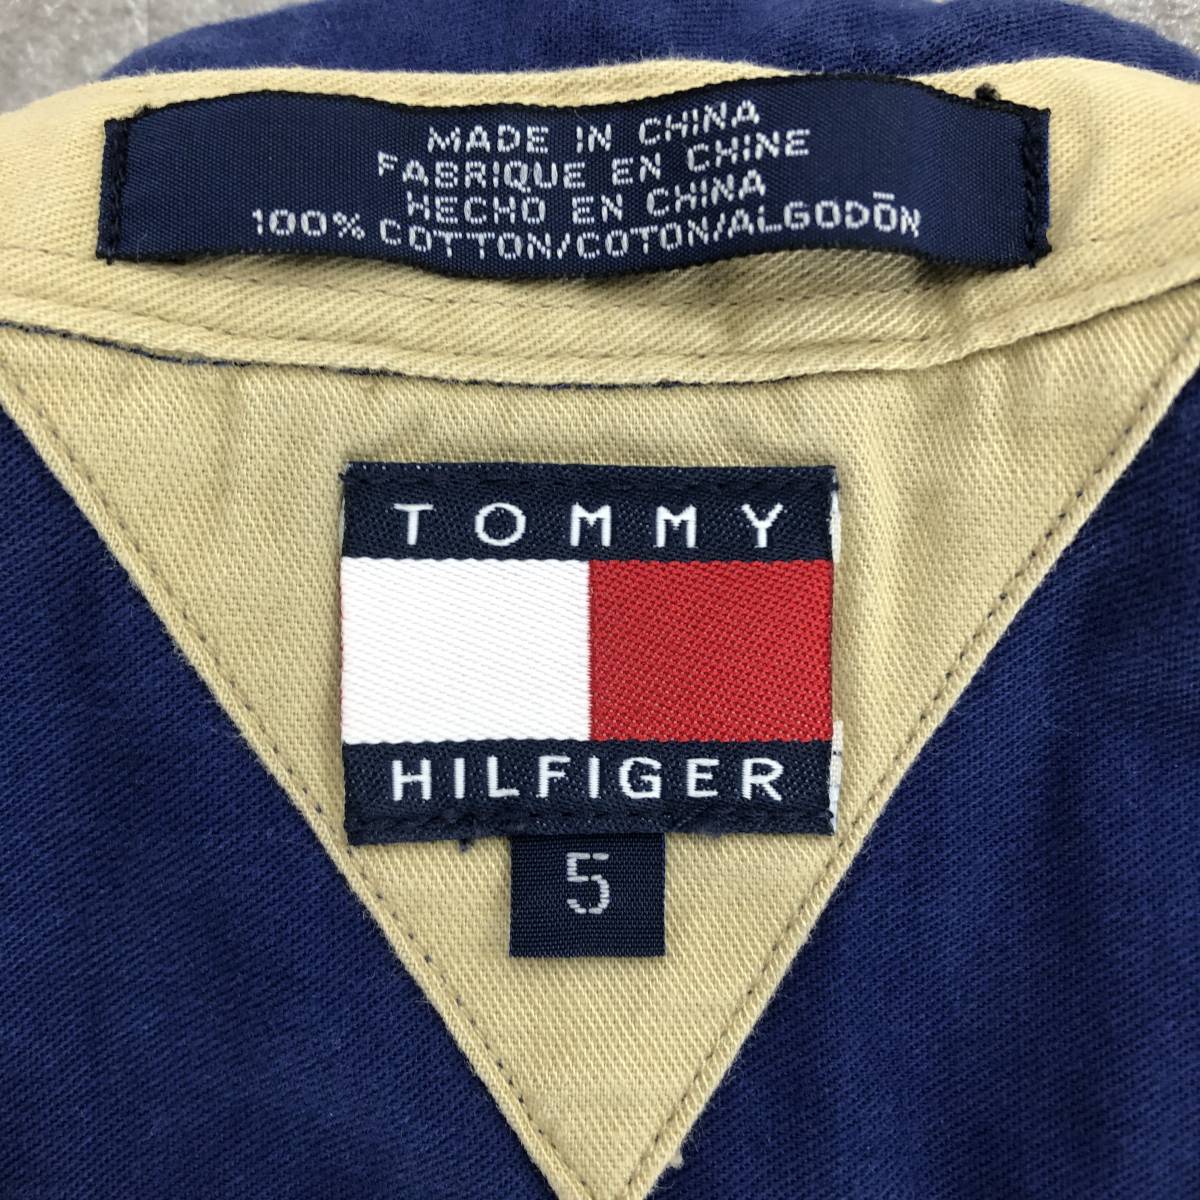 TOMMY HILFIGER Tommy Hilfiger border pattern long sleeve shirt men's Kids blue blue red red black black 110 centimeter cotton 100%